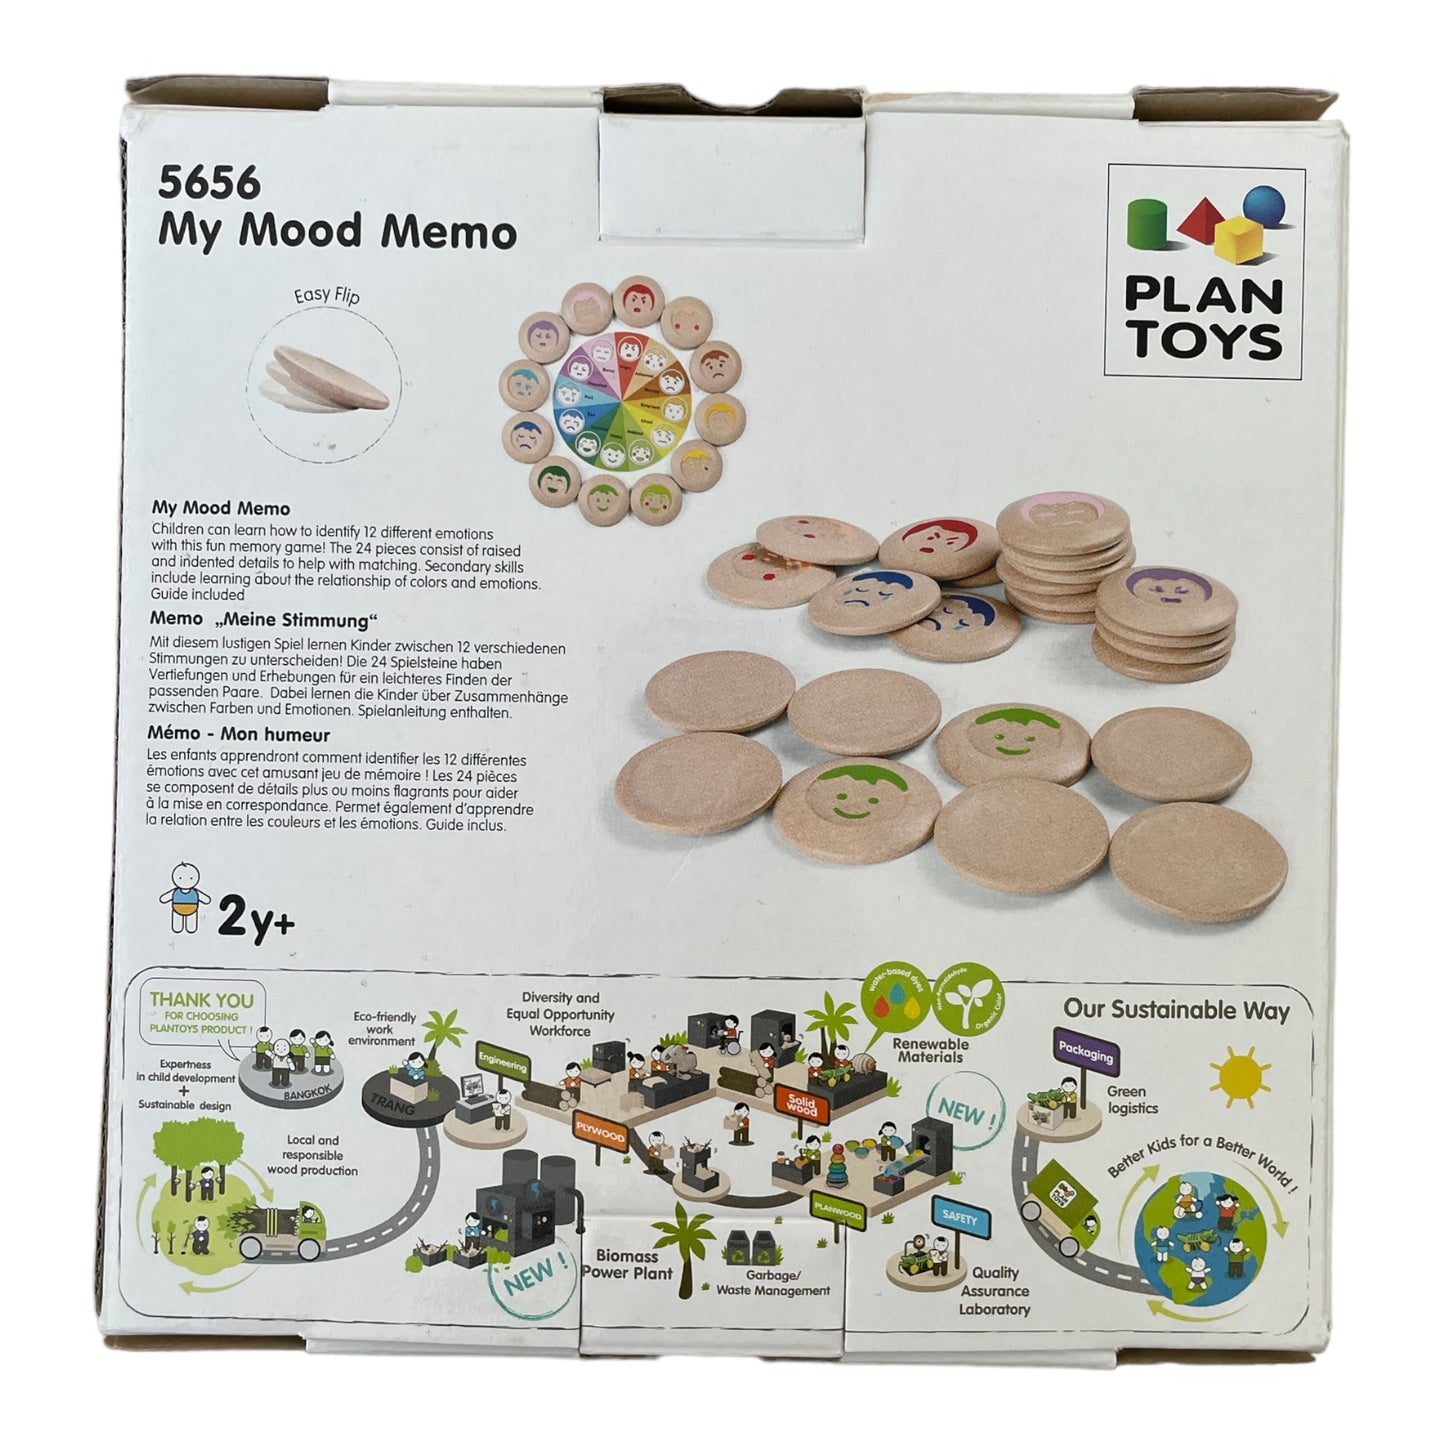 Plan Toys - My mood memo game